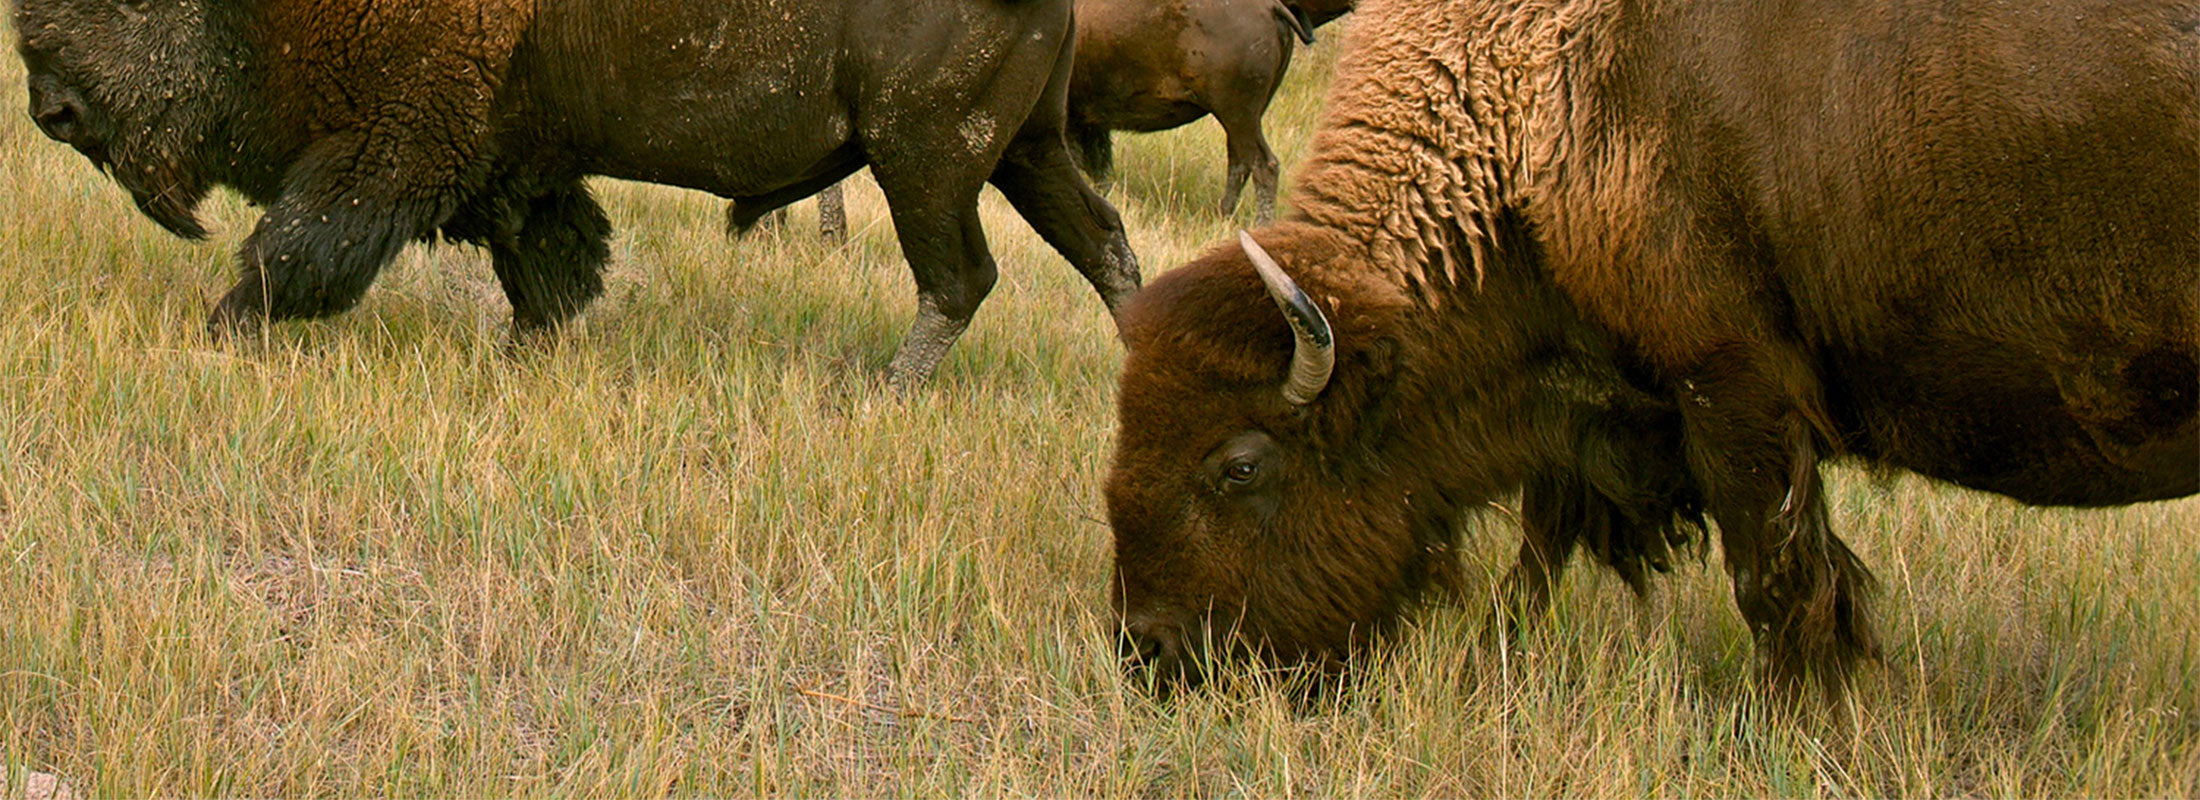 A close shot of buffalo grazing